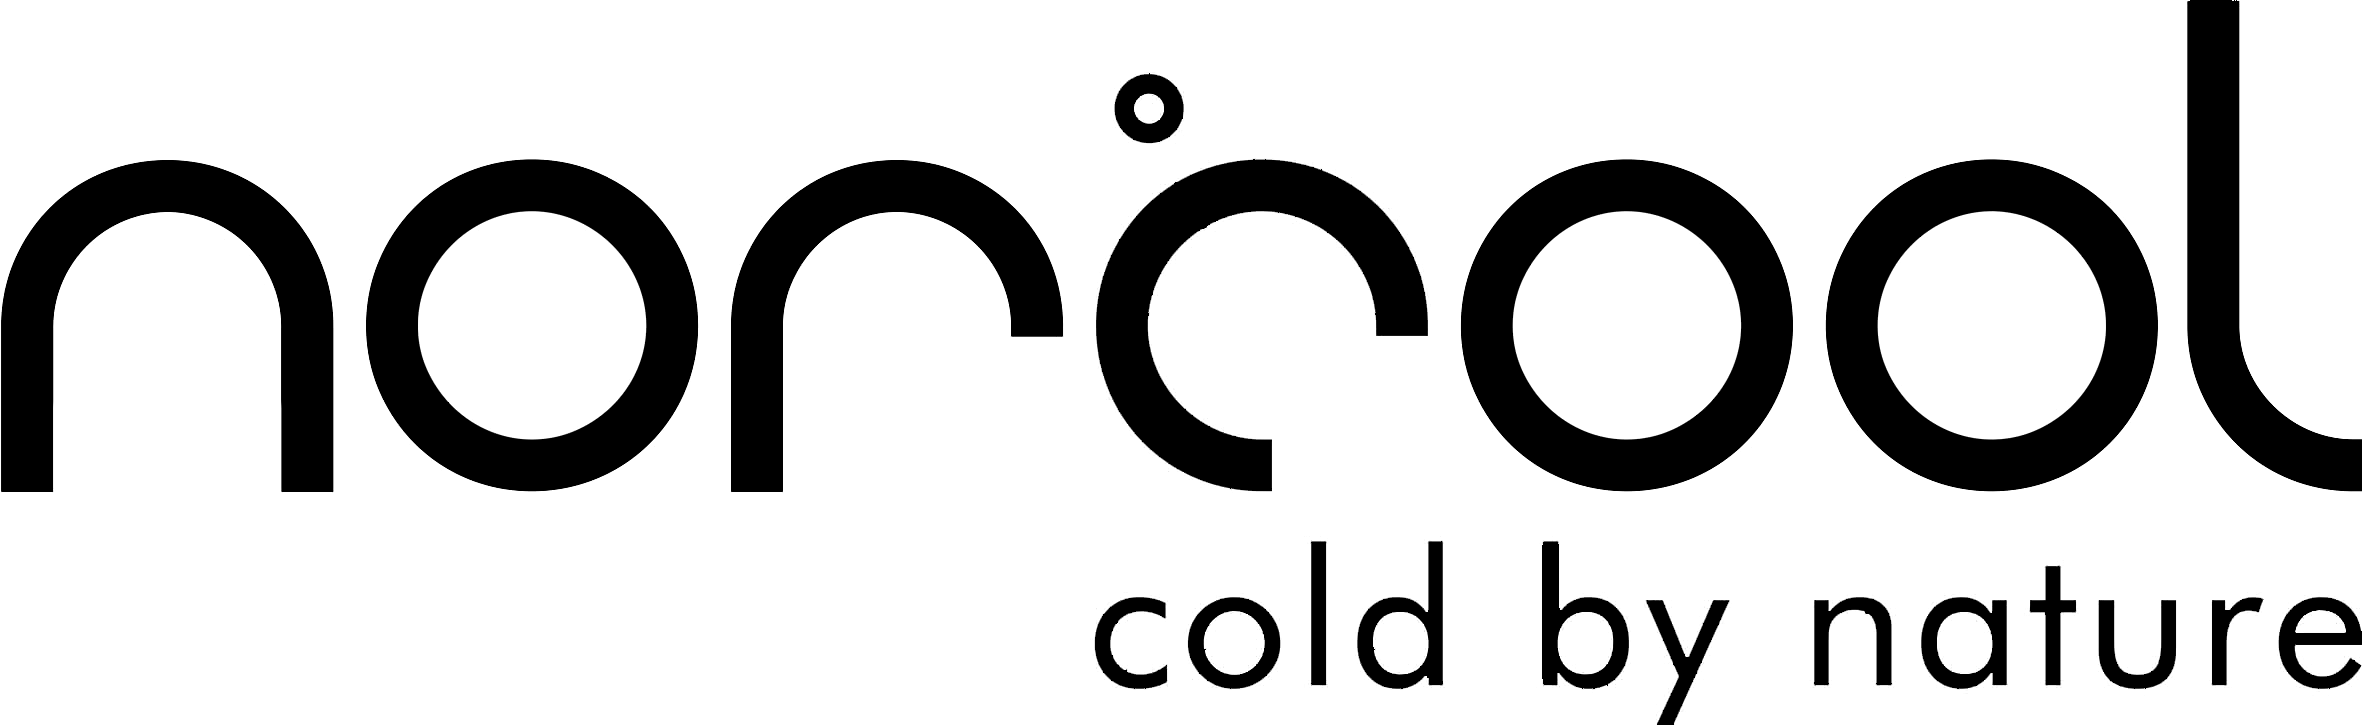 Norcool-logo-svart